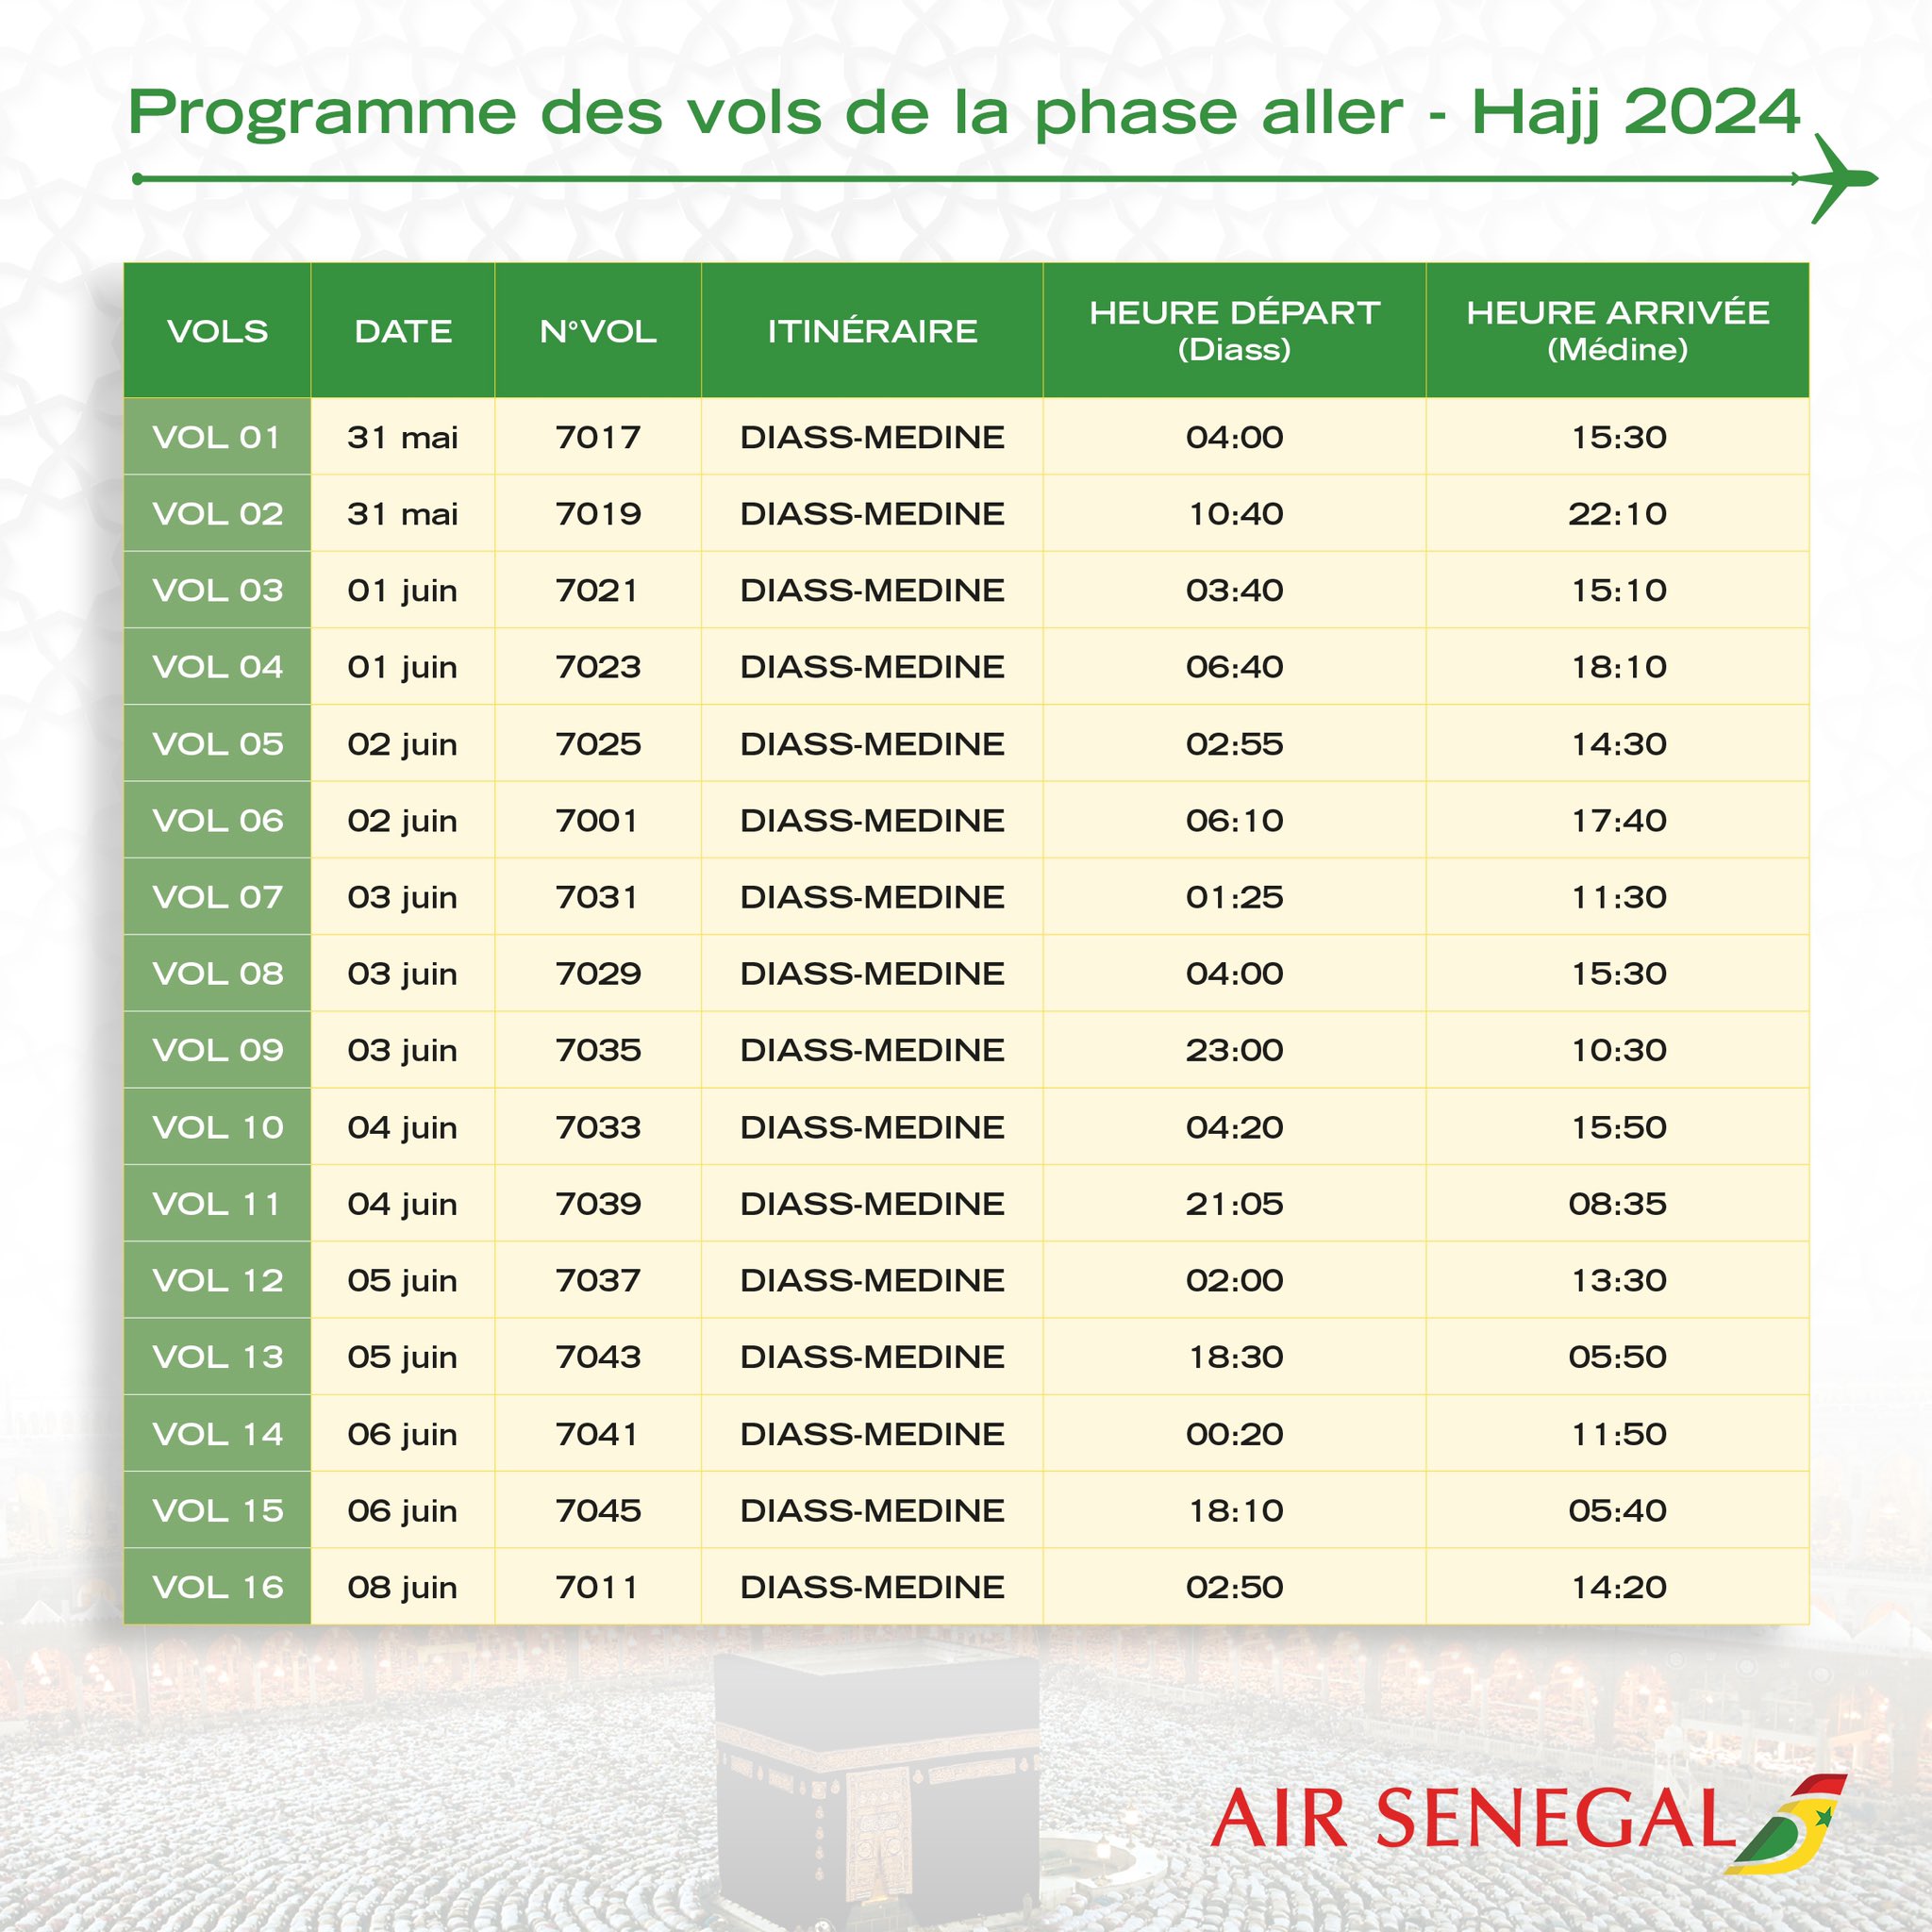 Pèlerinage à la Mecque 2024 avec Air Sénégal